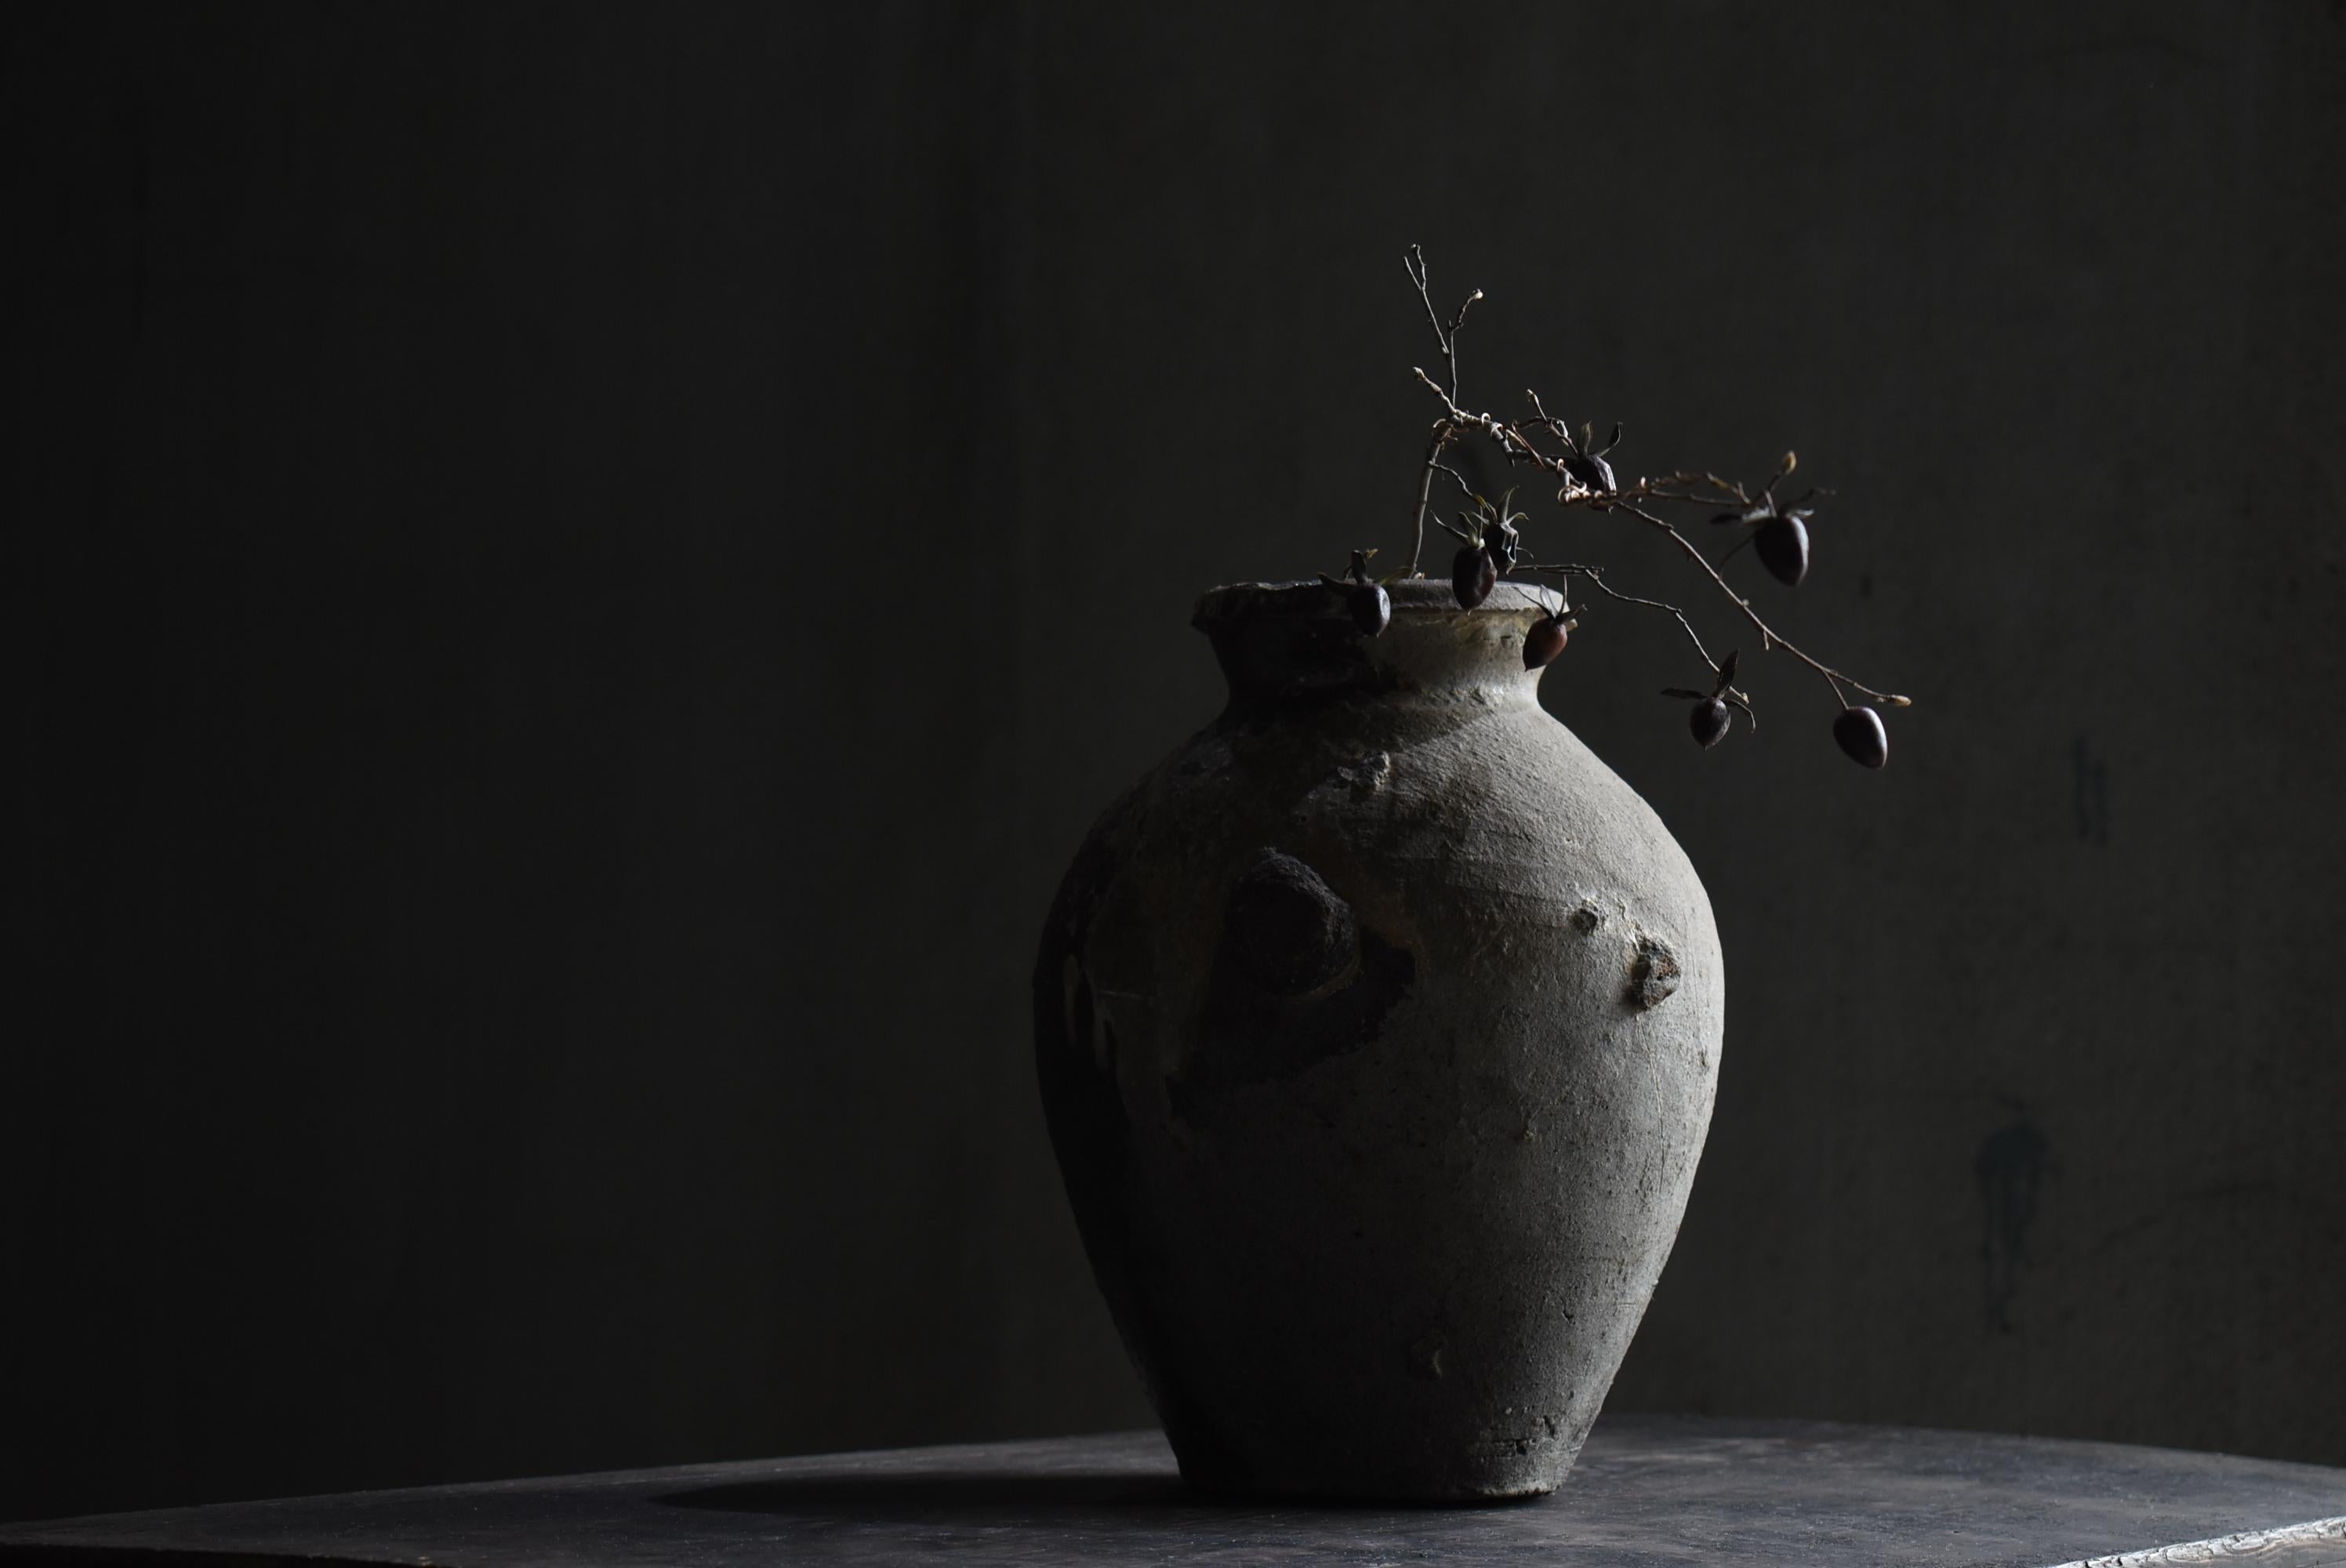 Japanese Antique Pottery Vase 14-16th Century / Flower Vase Wabi Sabi 13